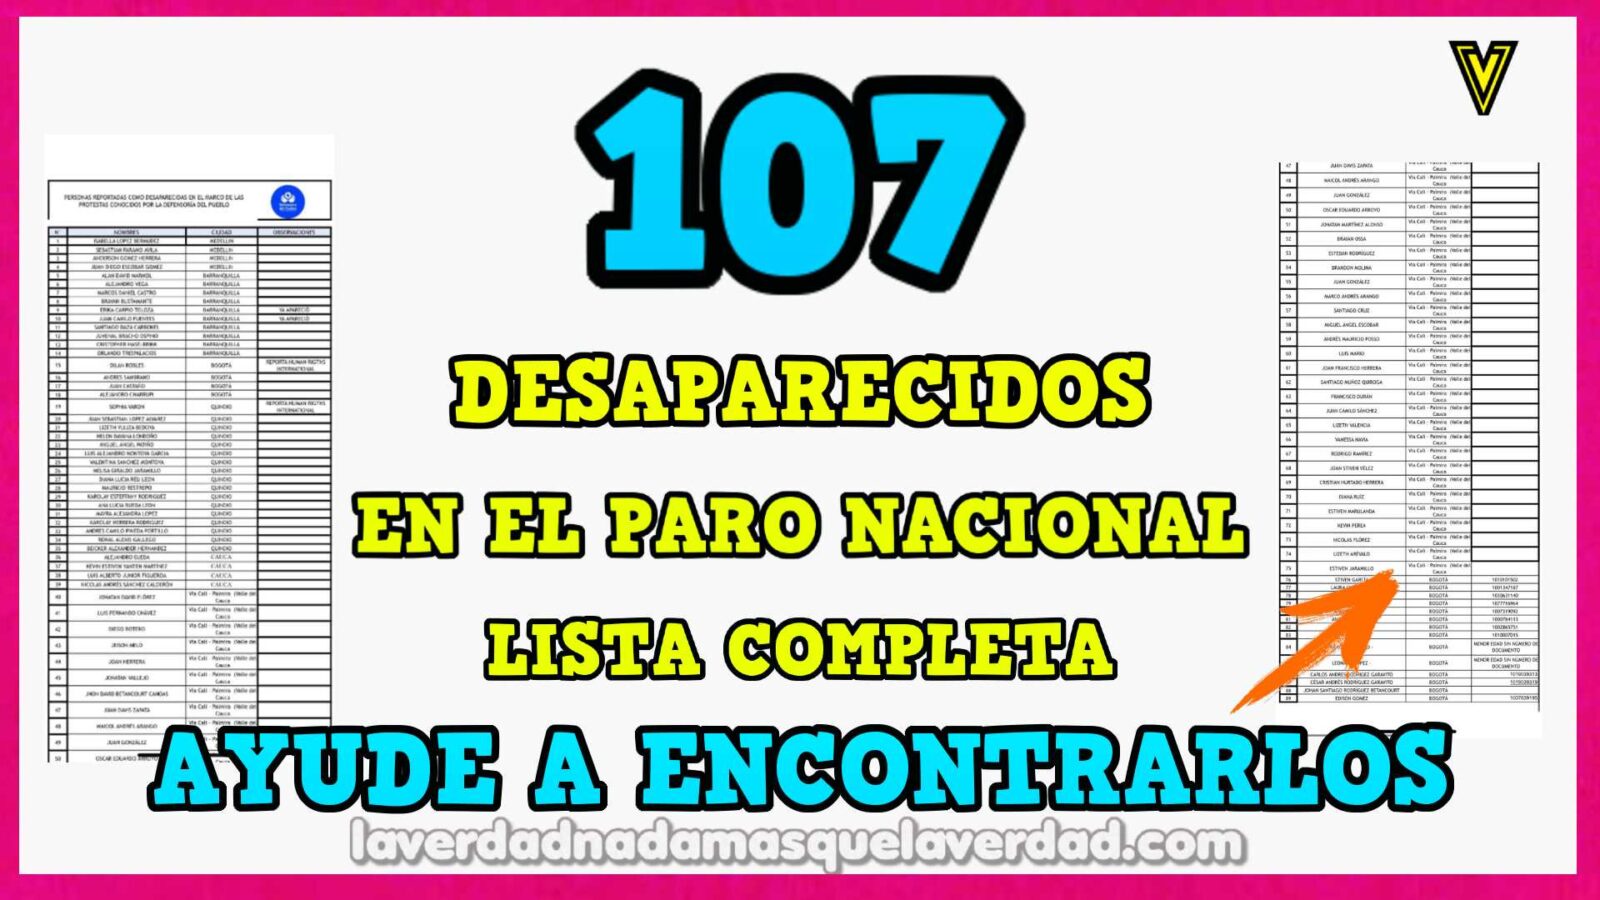 107 DESAPARECIDOS EN COLOMBIA